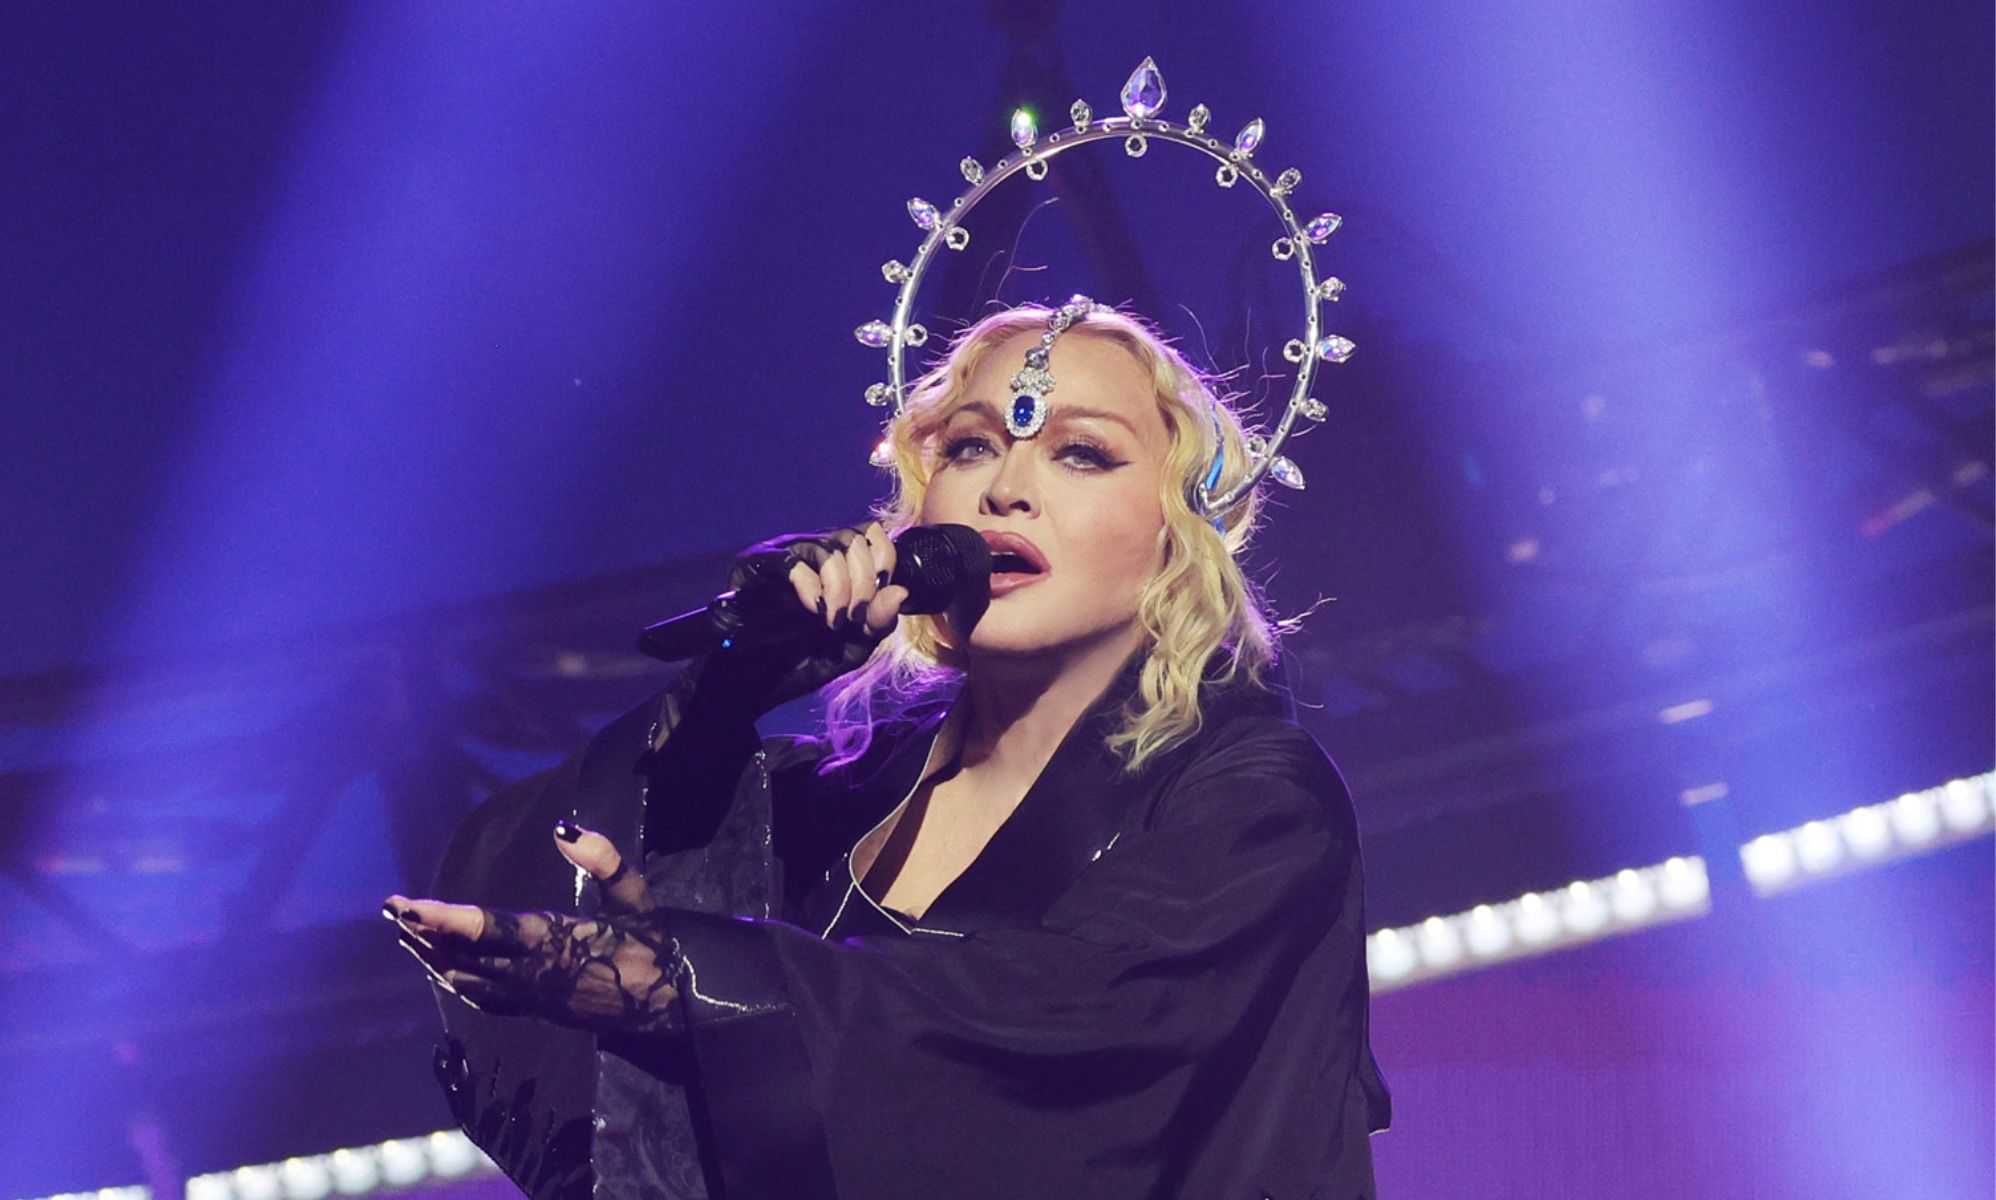 Habla una fan de Madonna en silla de ruedas a la que la estrella llamó la atención por sentarse